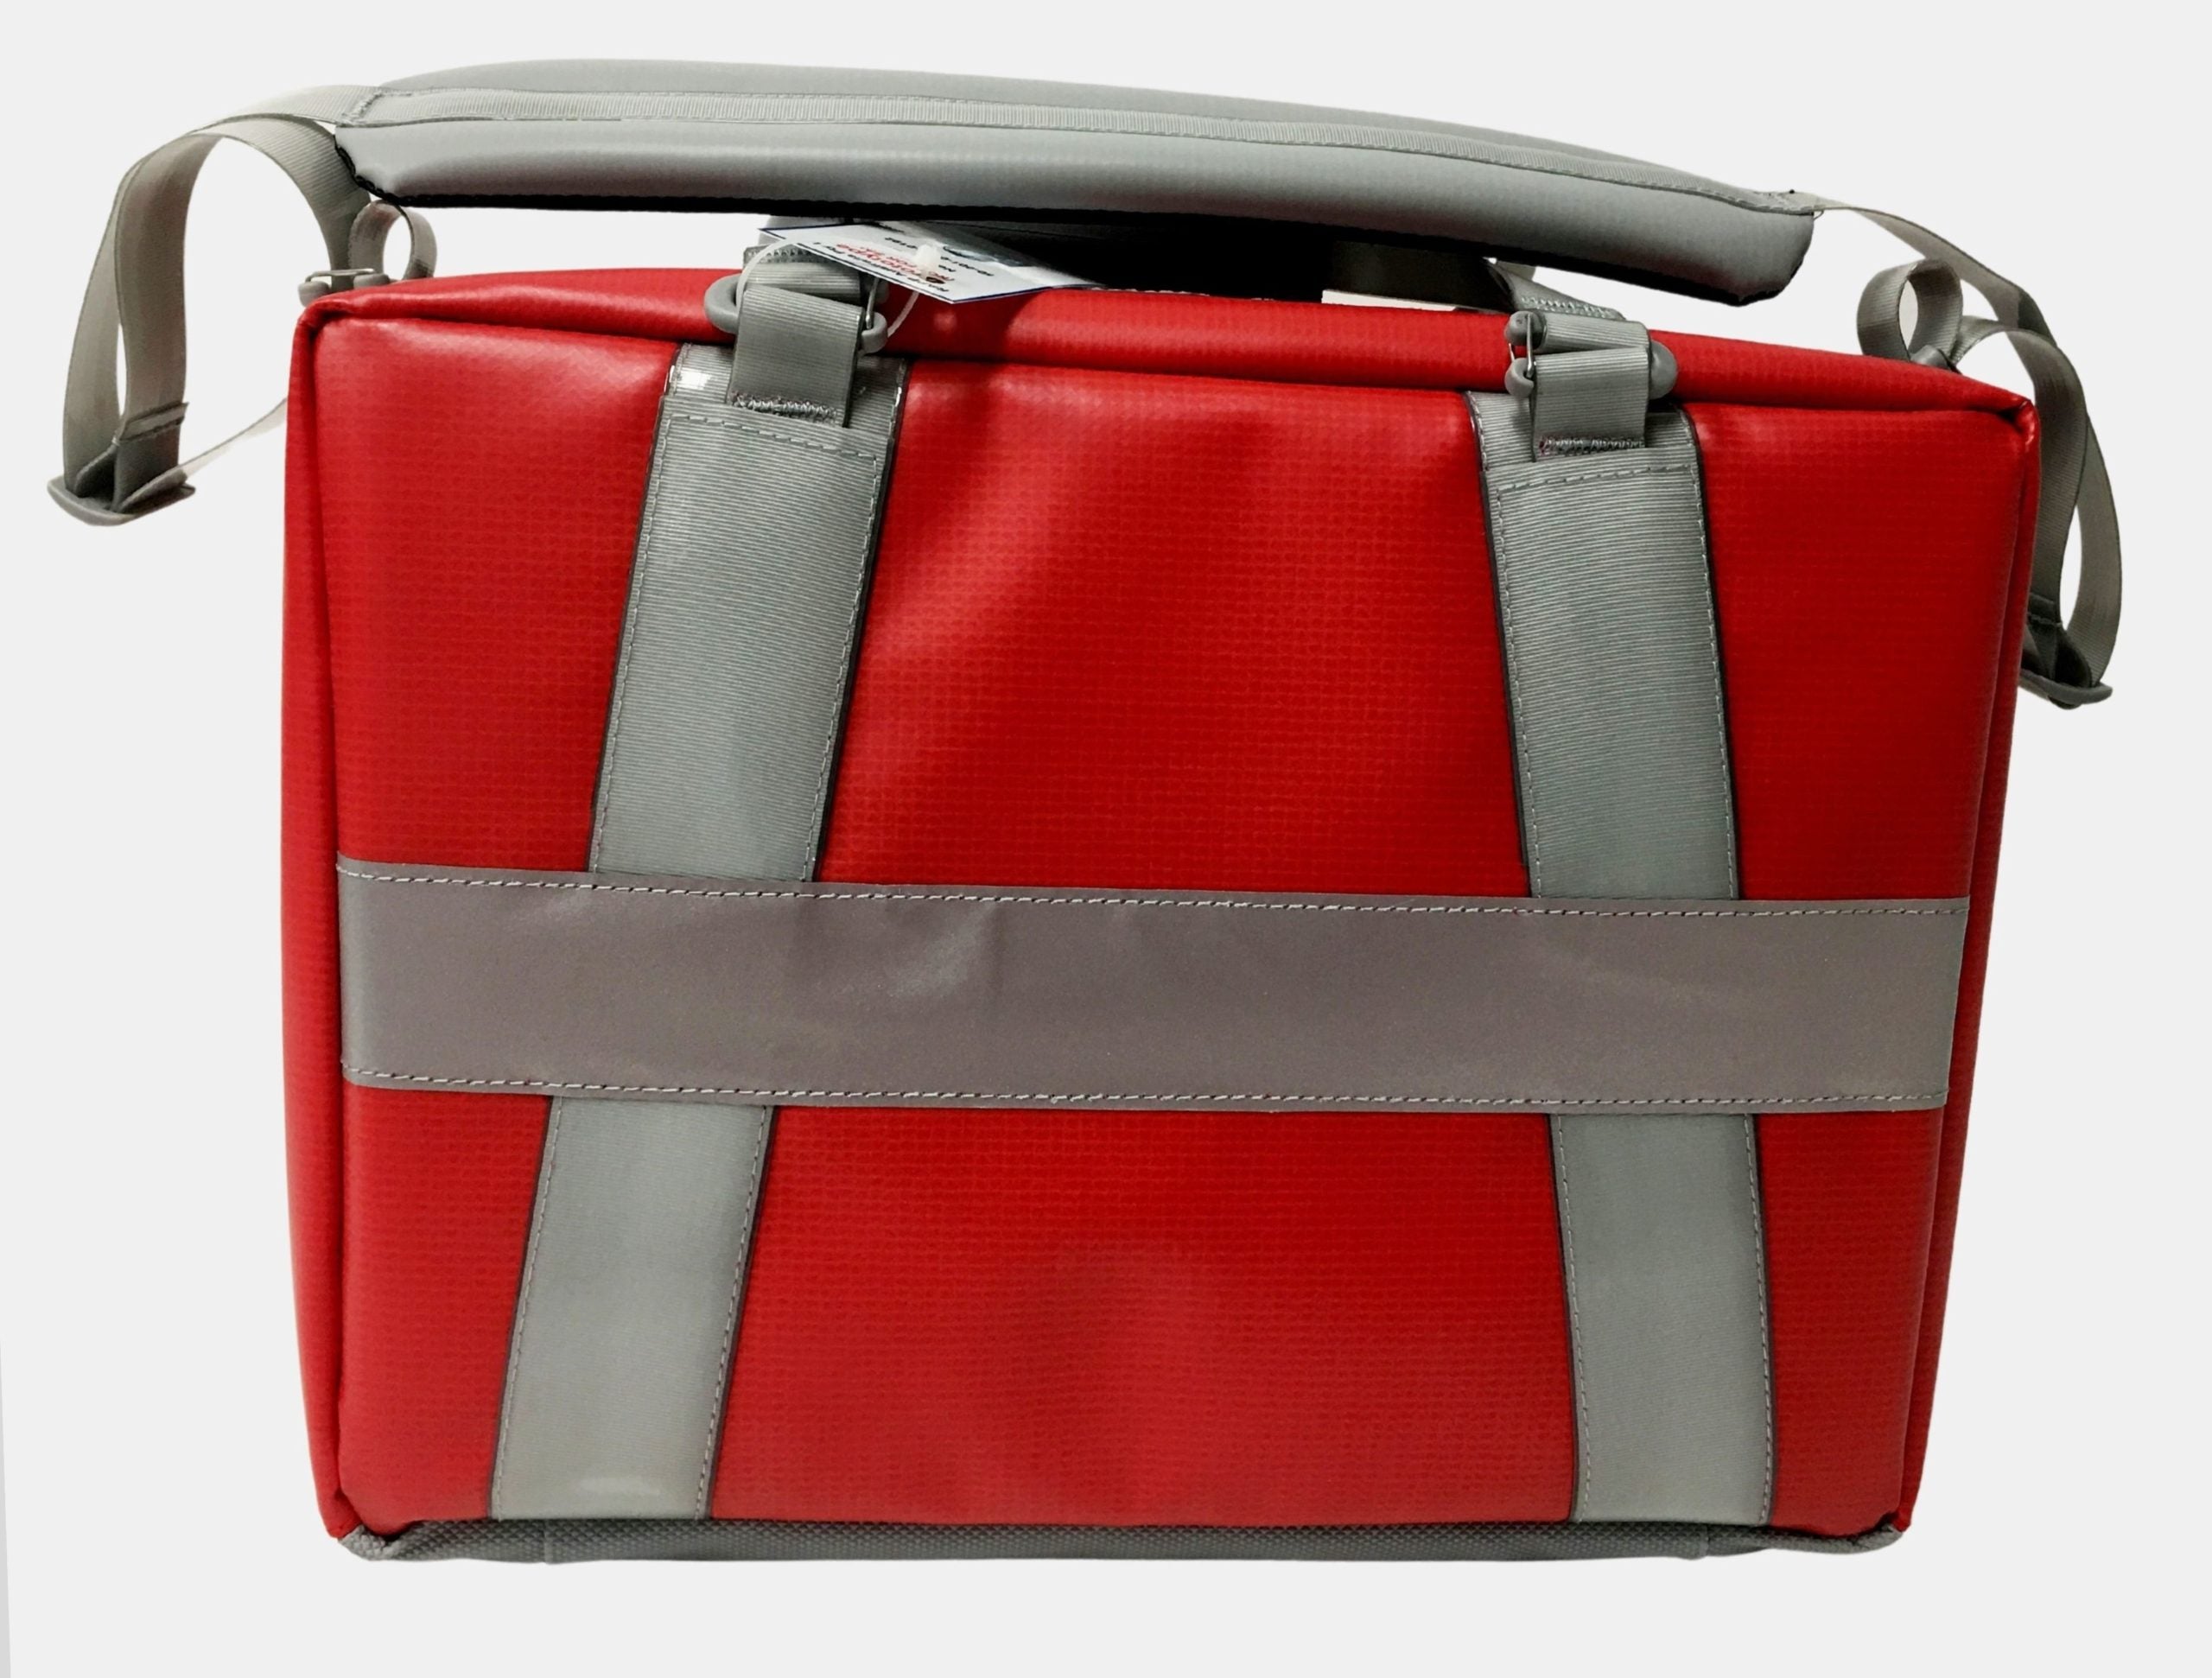 Neann TEK Trauma Equipment Kit Bag Only - Red